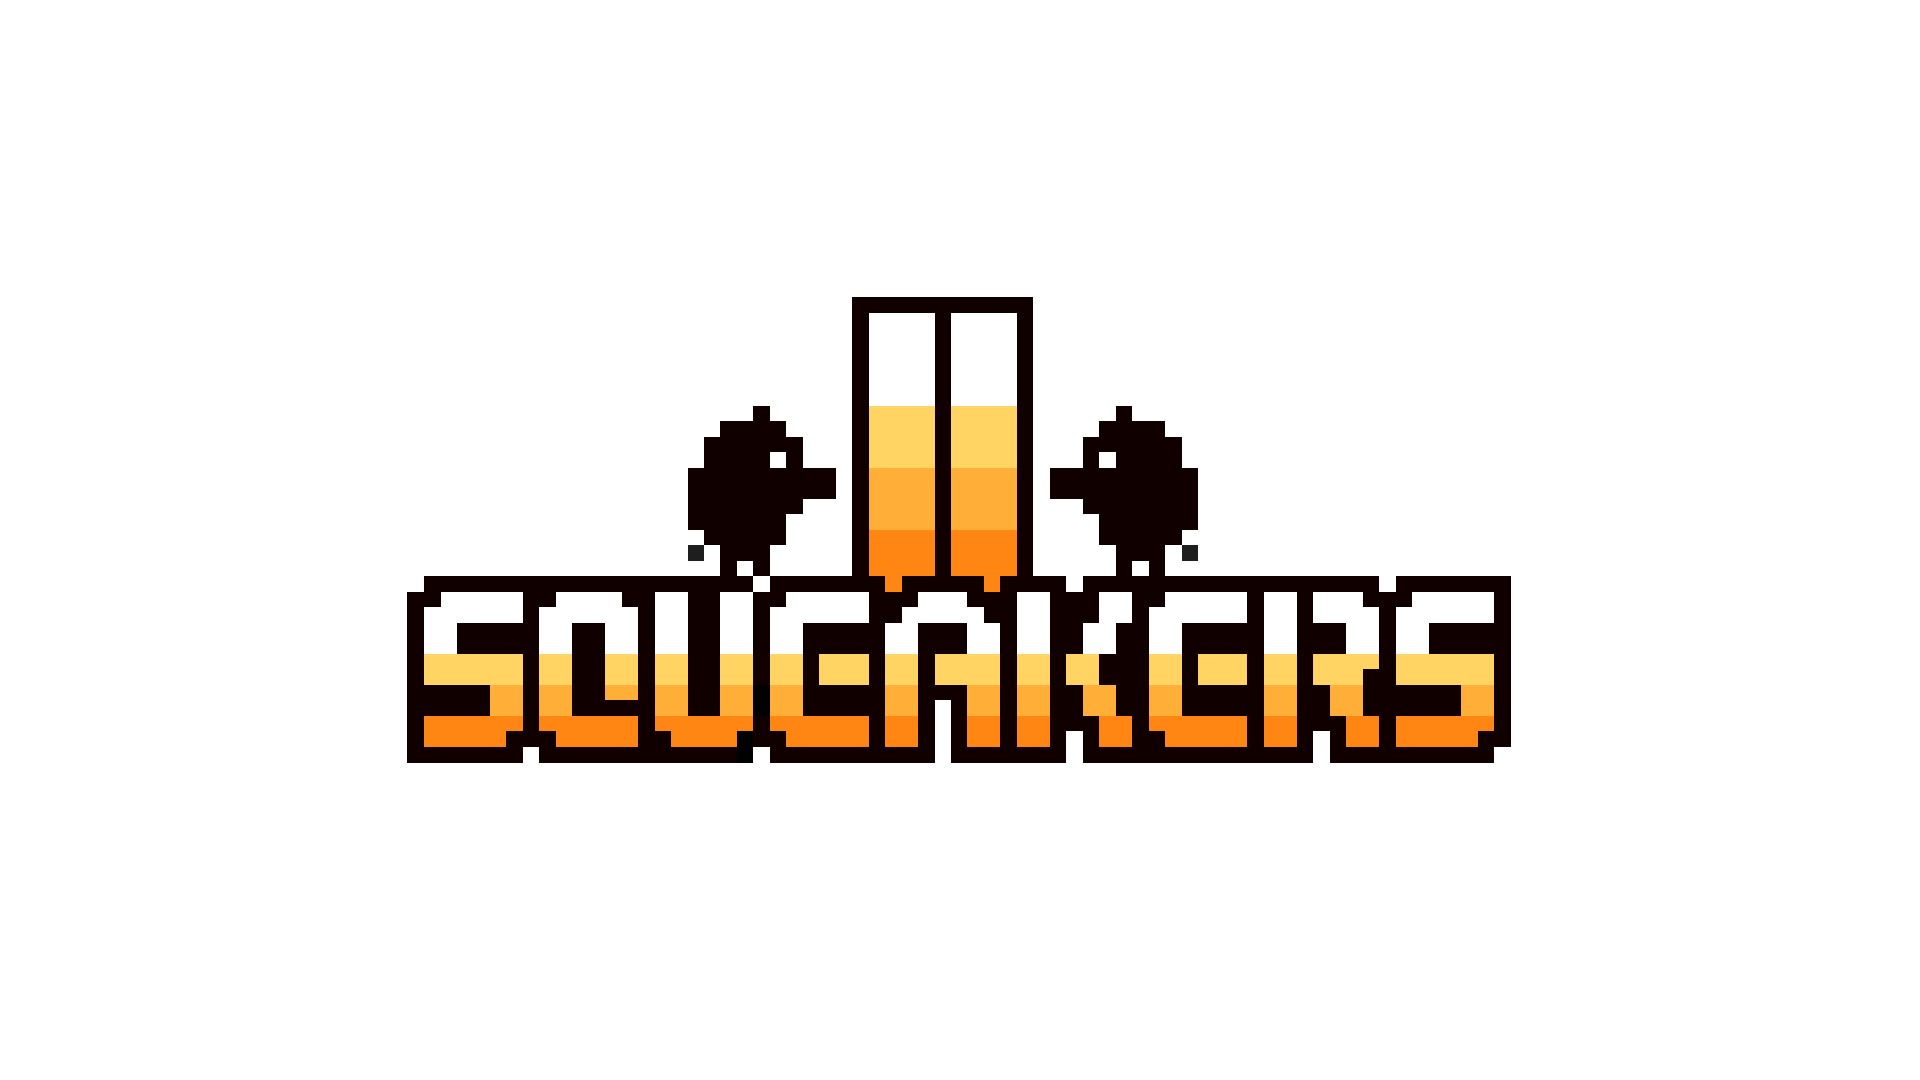 Squeakers II